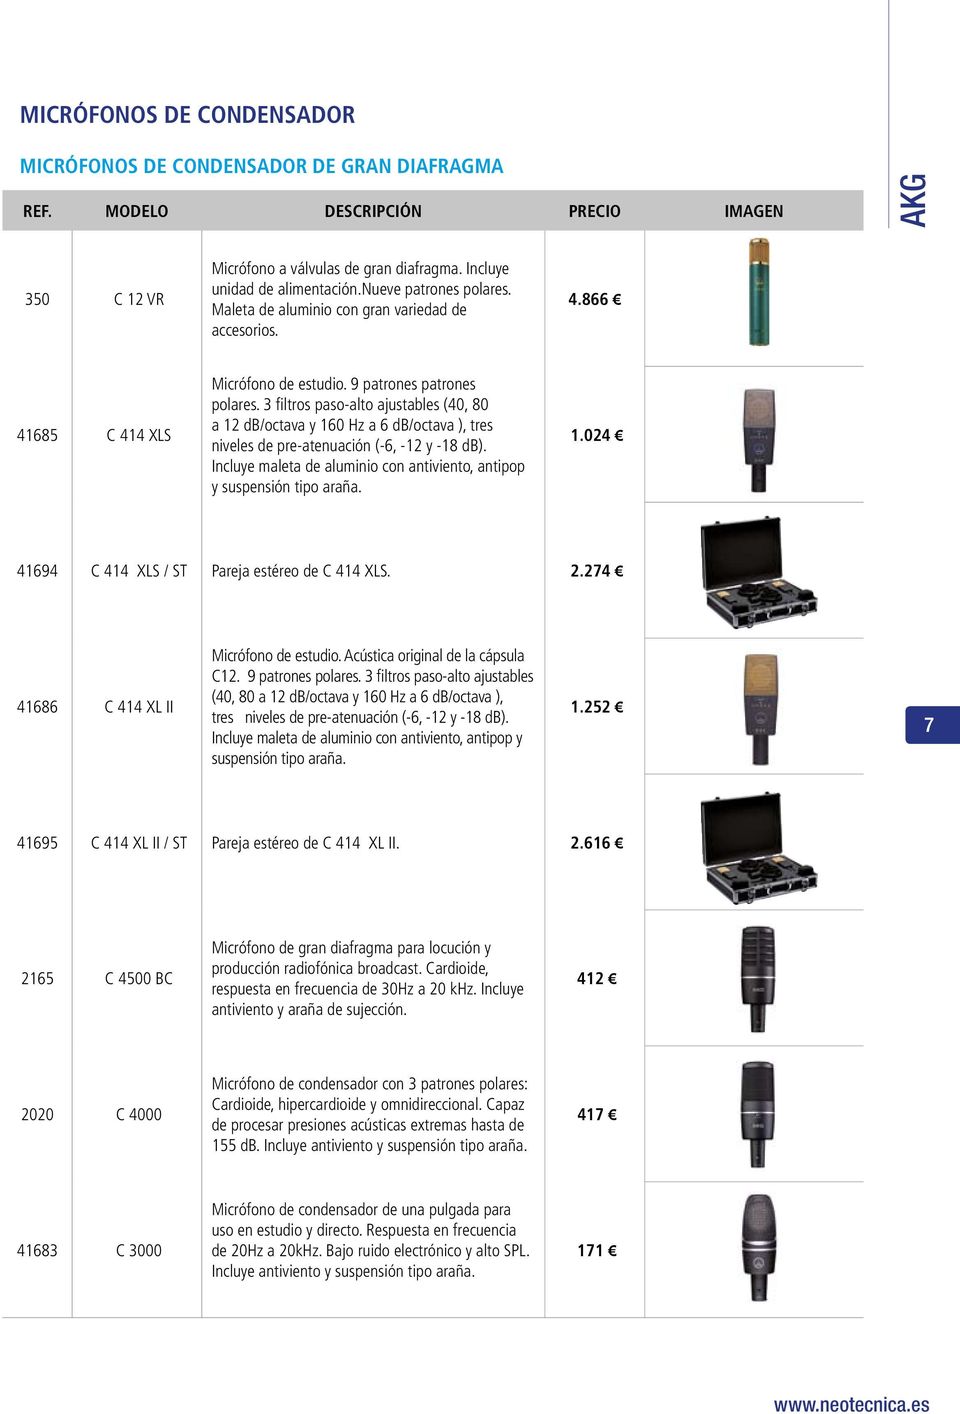 3 filtros paso-alto ajustables (40, 80 a 12 db/octava y 160 Hz a 6 db/octava ), tres niveles de pre-atenuación (-6, -12 y -18 db).